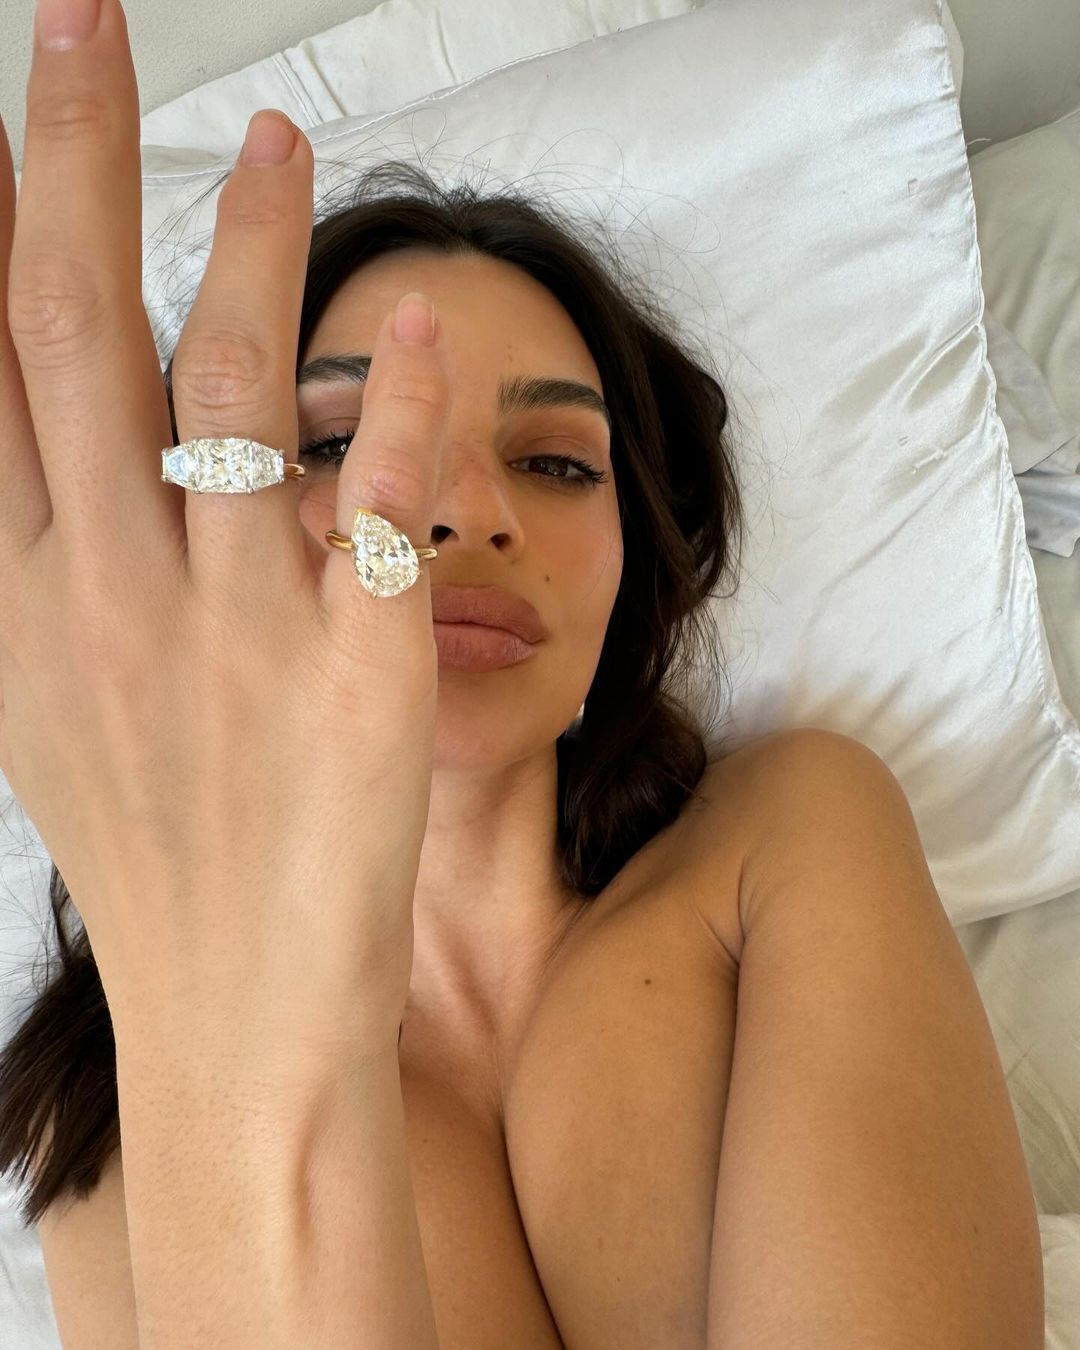 Эмили Ратаковские показала свои "кольца для развода" с гигантскими бриллиантами на откровенных фото